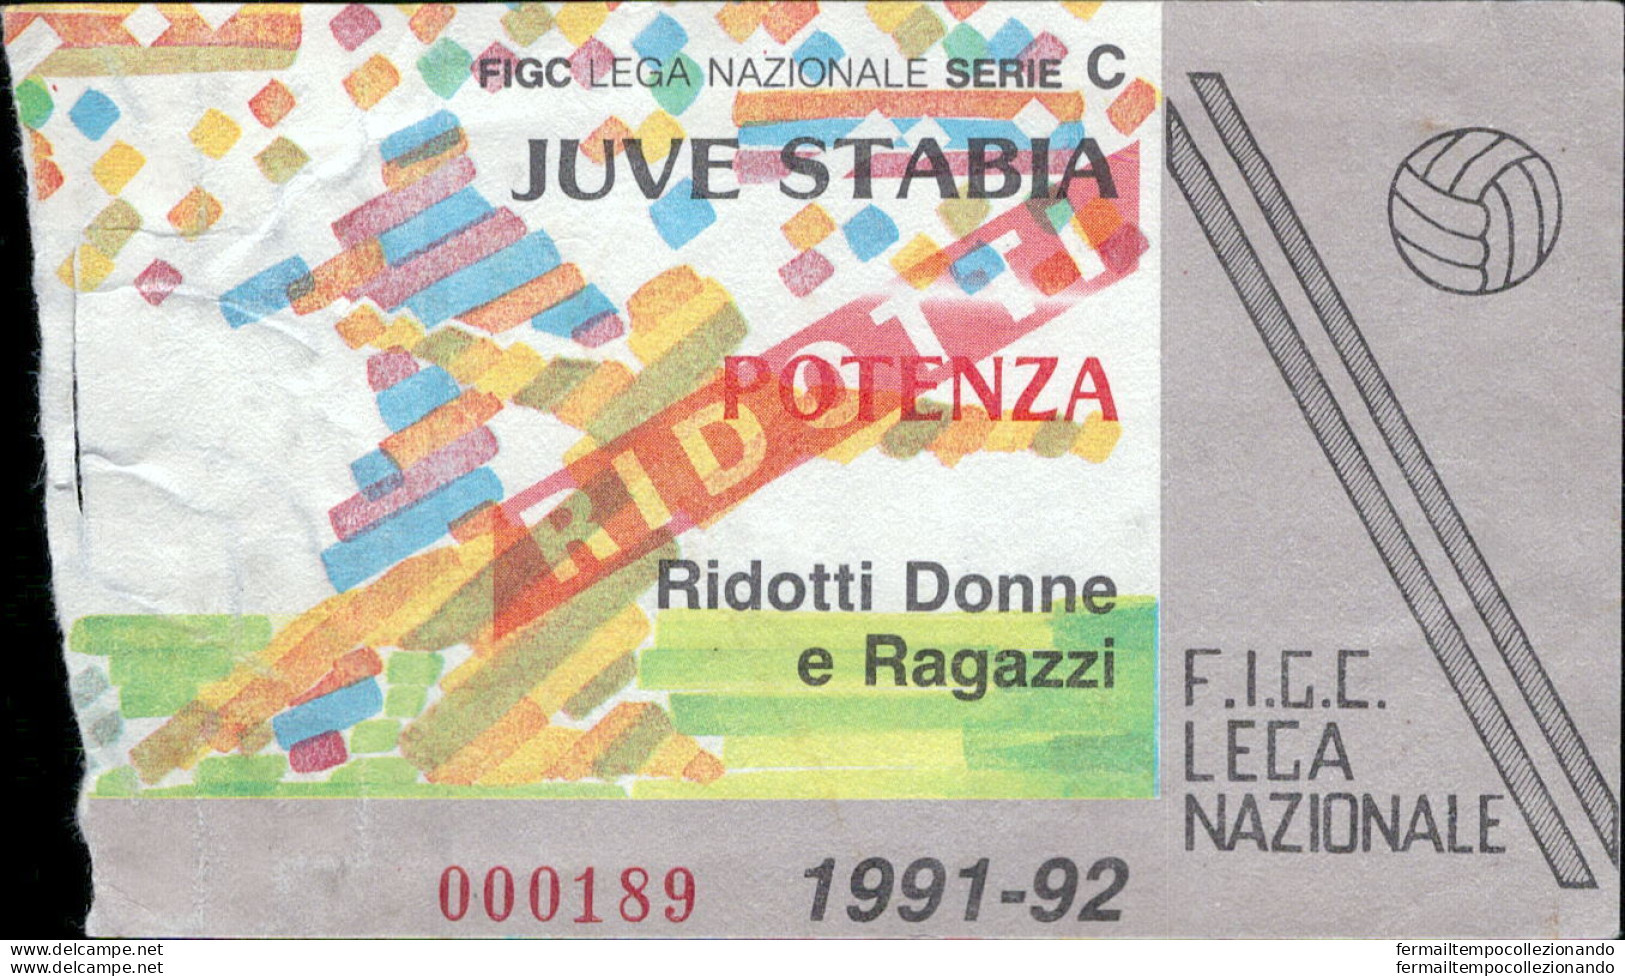 Bl71 Biglietto Calcio Ticket Juve Stabia - Potenza 1991-92 - Biglietti D'ingresso